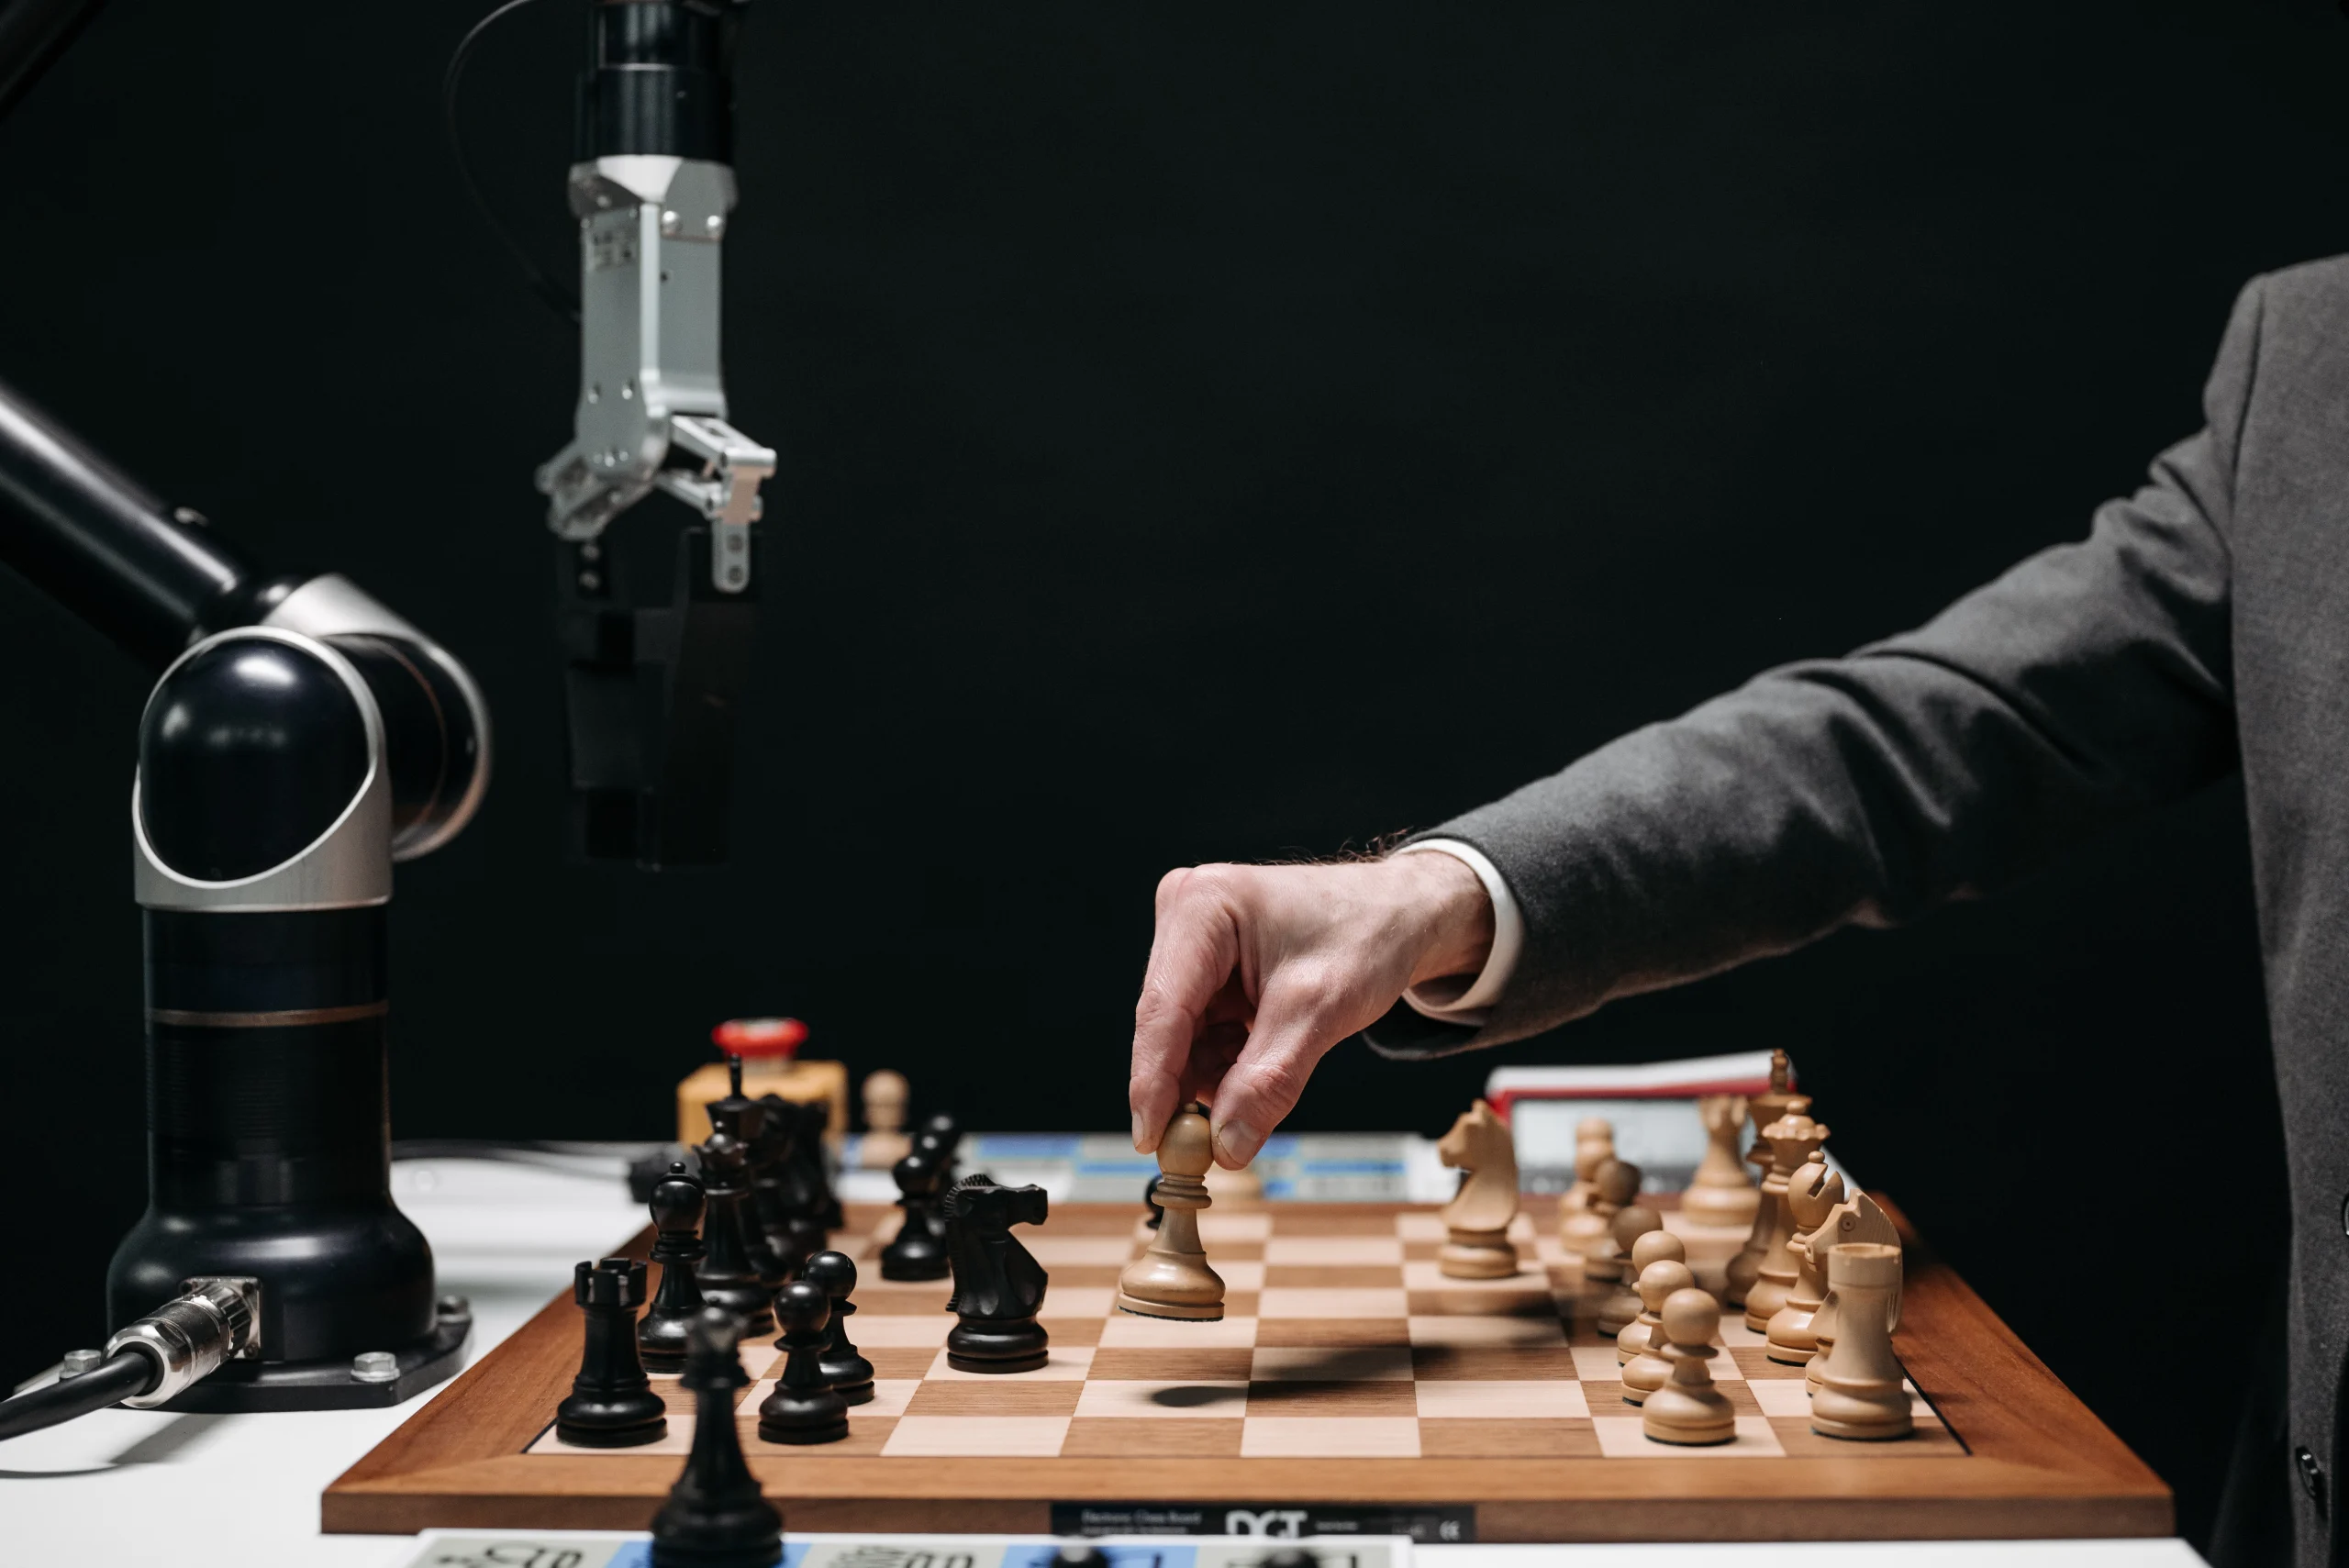 Sur la page accueil du site l'échiquier Agenais, au centre de l'image se trouve un plateau d'échecs avec à gauche une main robotisée et à droite le bras d'un homme qui saisit un pion blanc pour jouer.